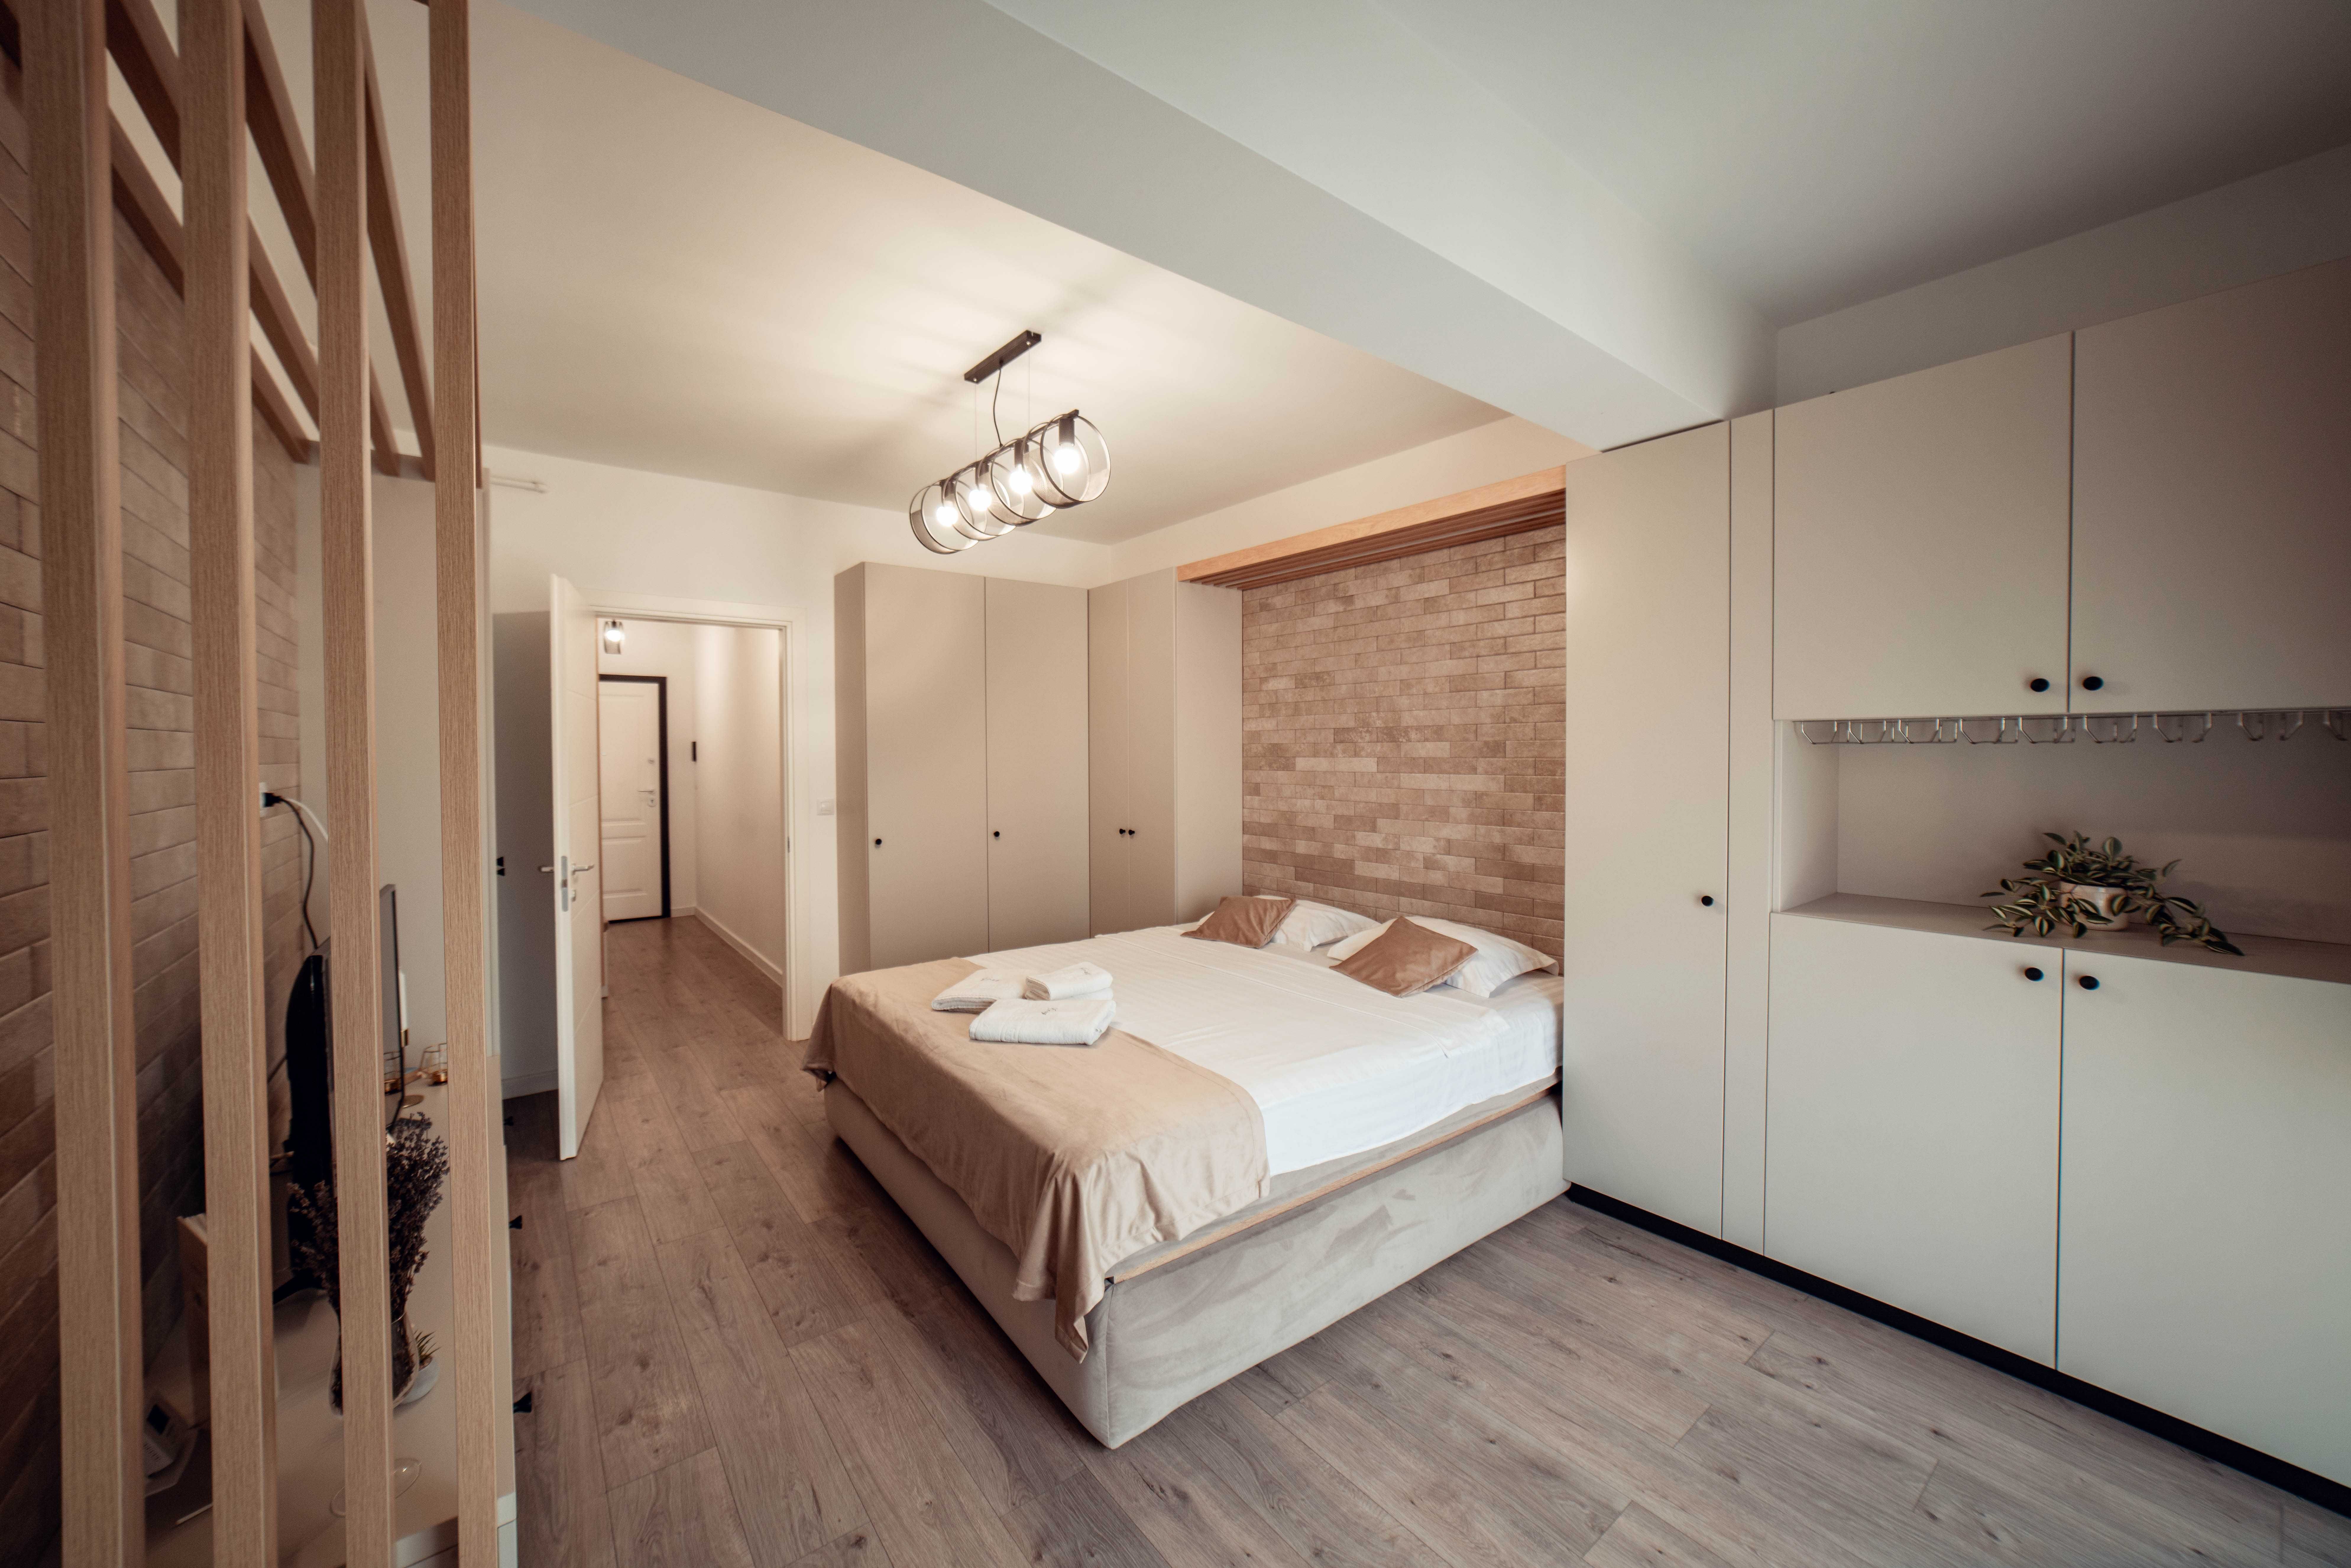 Cazare Apartamente LUX in Regim Hotelier - Centru/Newton/Copou Iasi